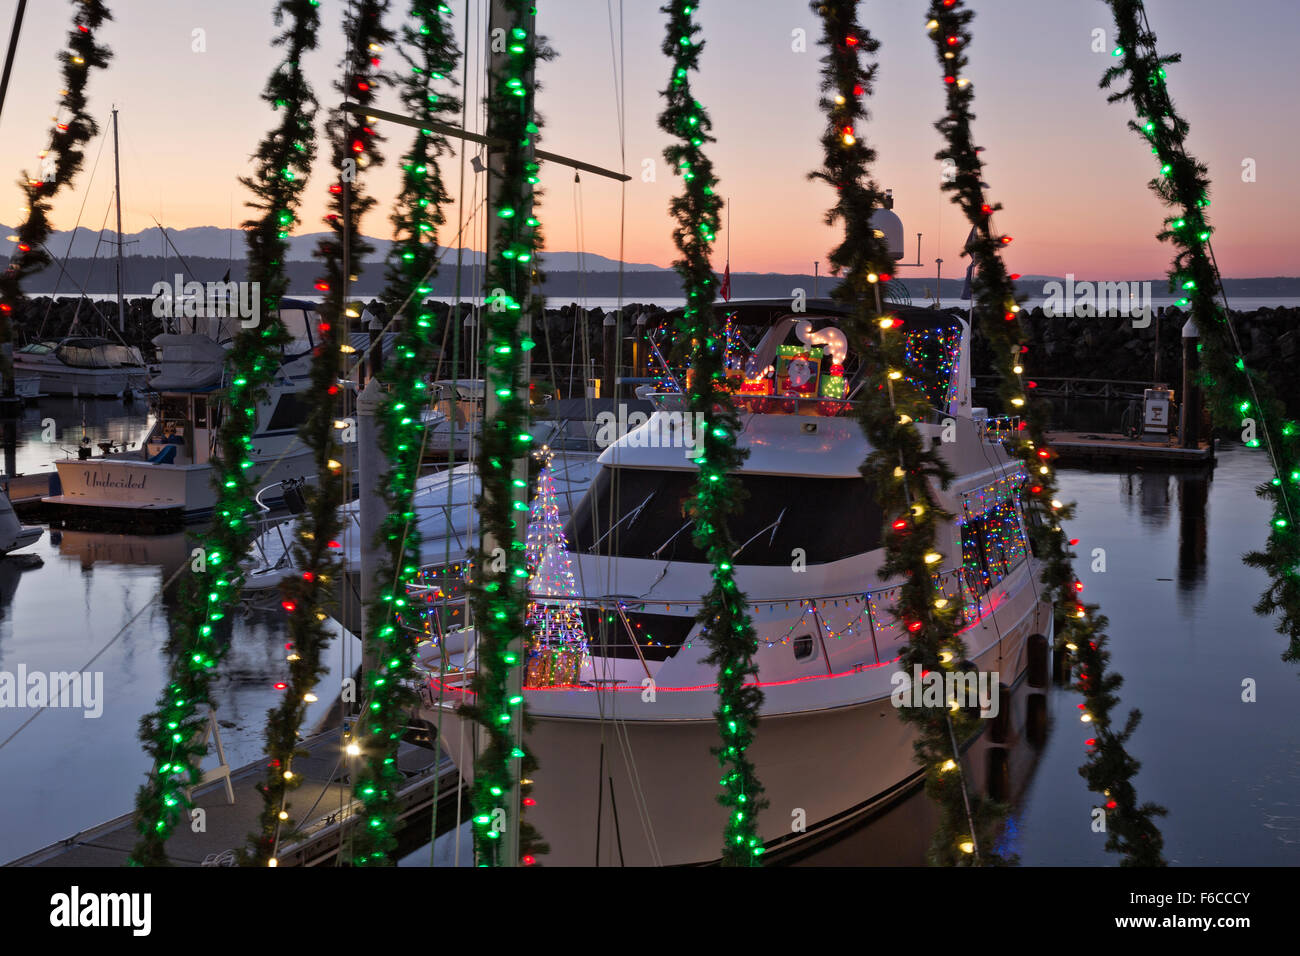 WASHINGTON - bateaux au port de plaisance d'Edmonds décoré pour la saison de vacances, avec la Puget Sound et les montagnes olympiques au-delà Banque D'Images